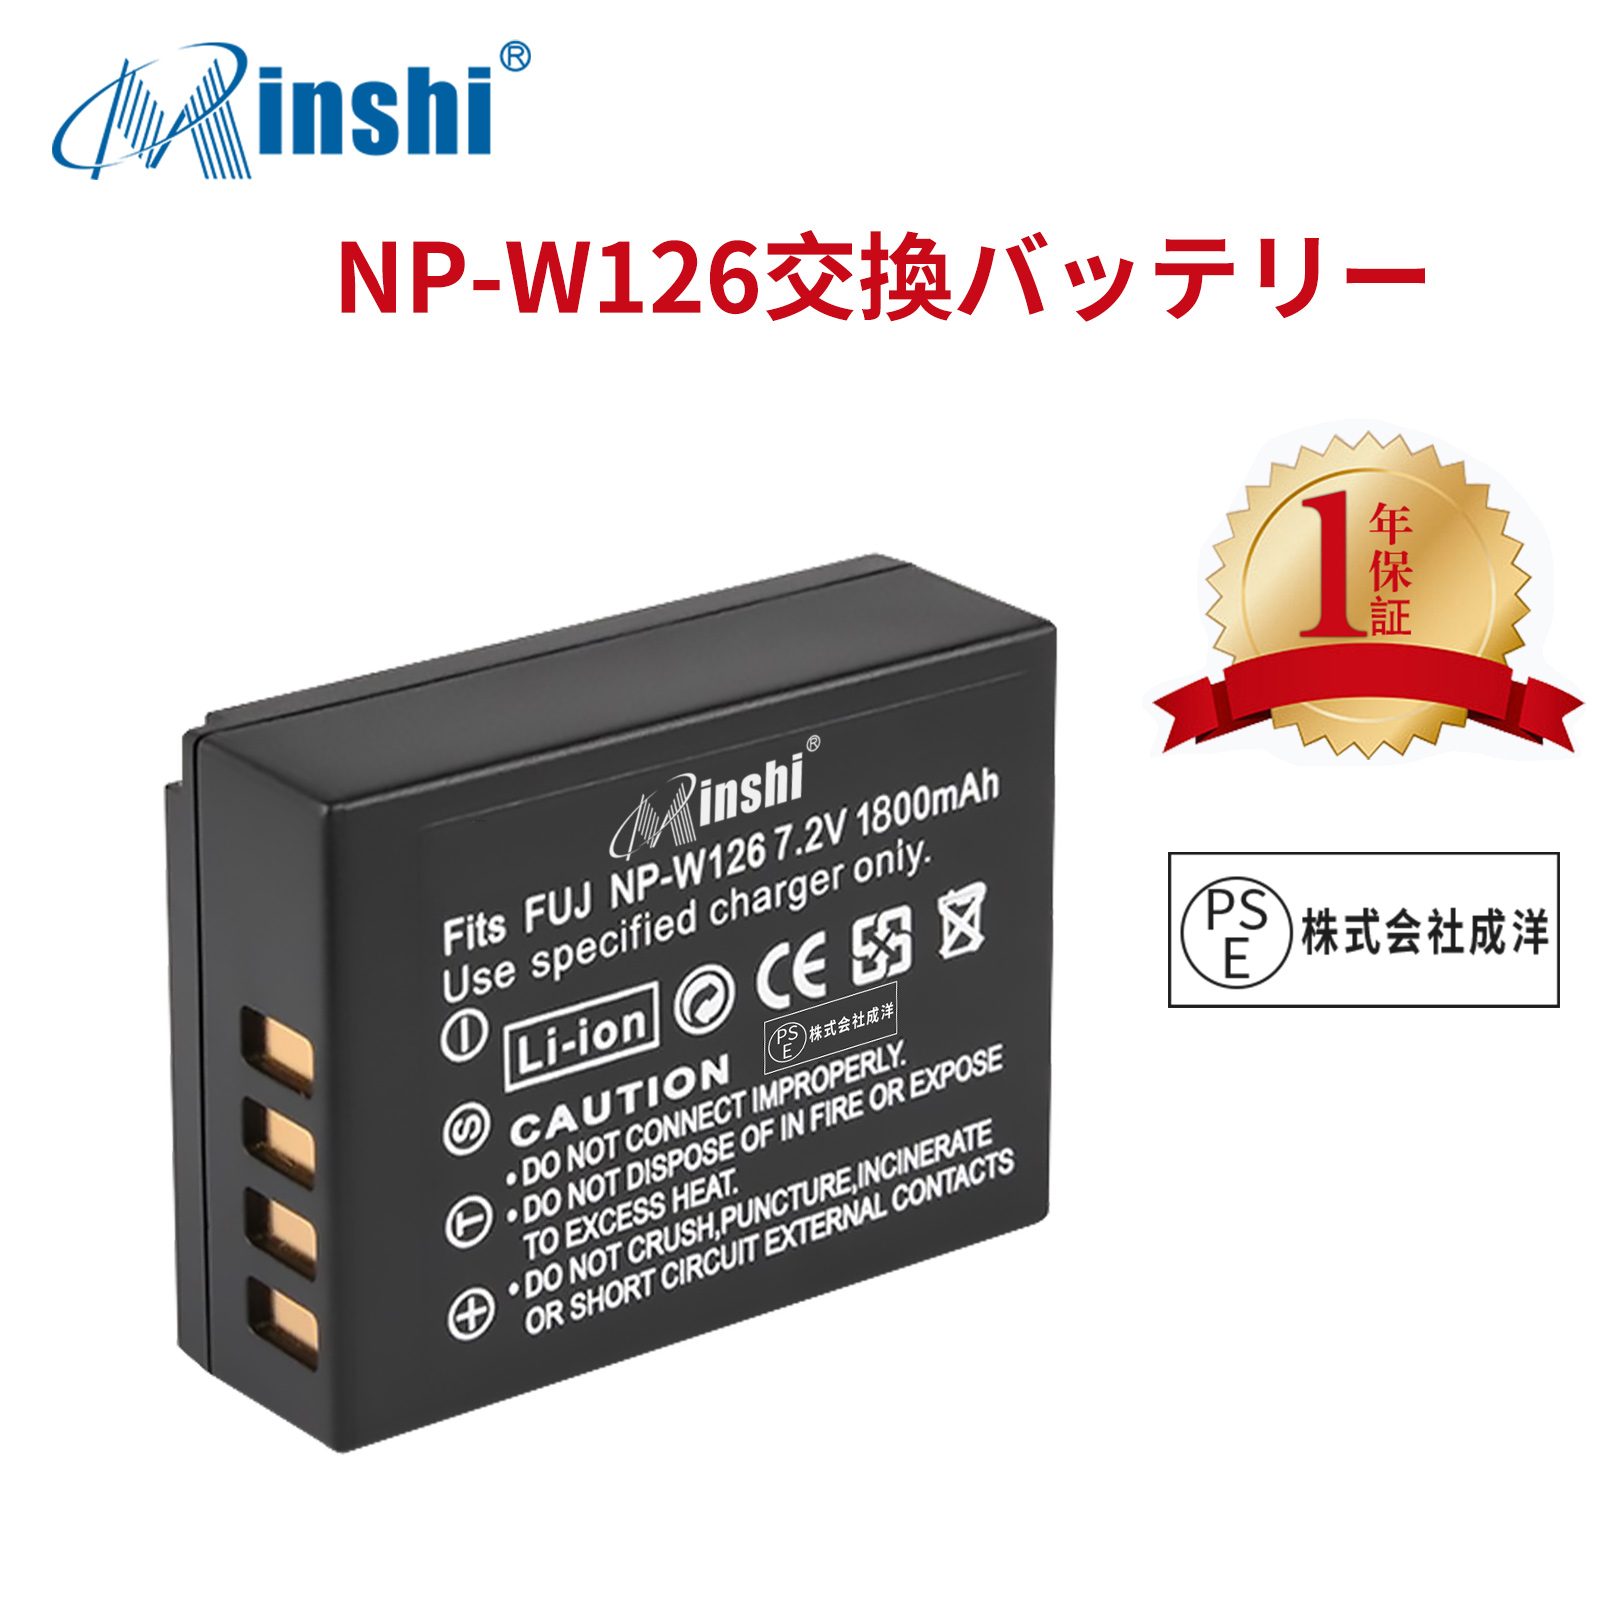 【1年保証】minshi FUJIFILM X-Pro2 NP-W126S 【1800mAh 7.2V】 NP-W126 NP-W126S高品質 NP-W126S NP-W126互換バッテリー